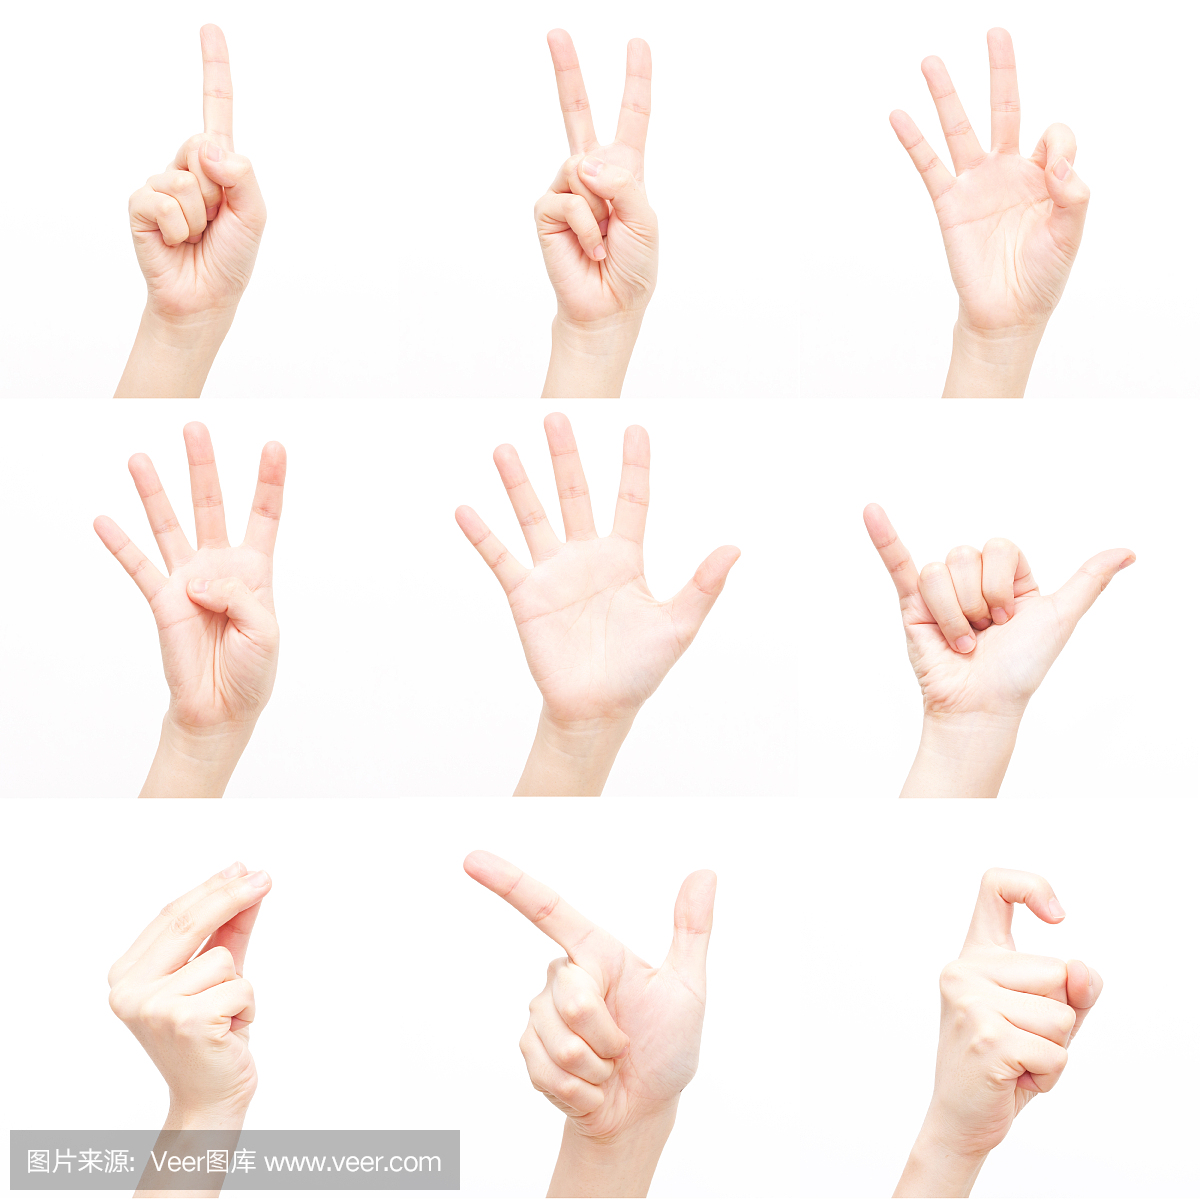 使用手势来表达数字(XXXL)